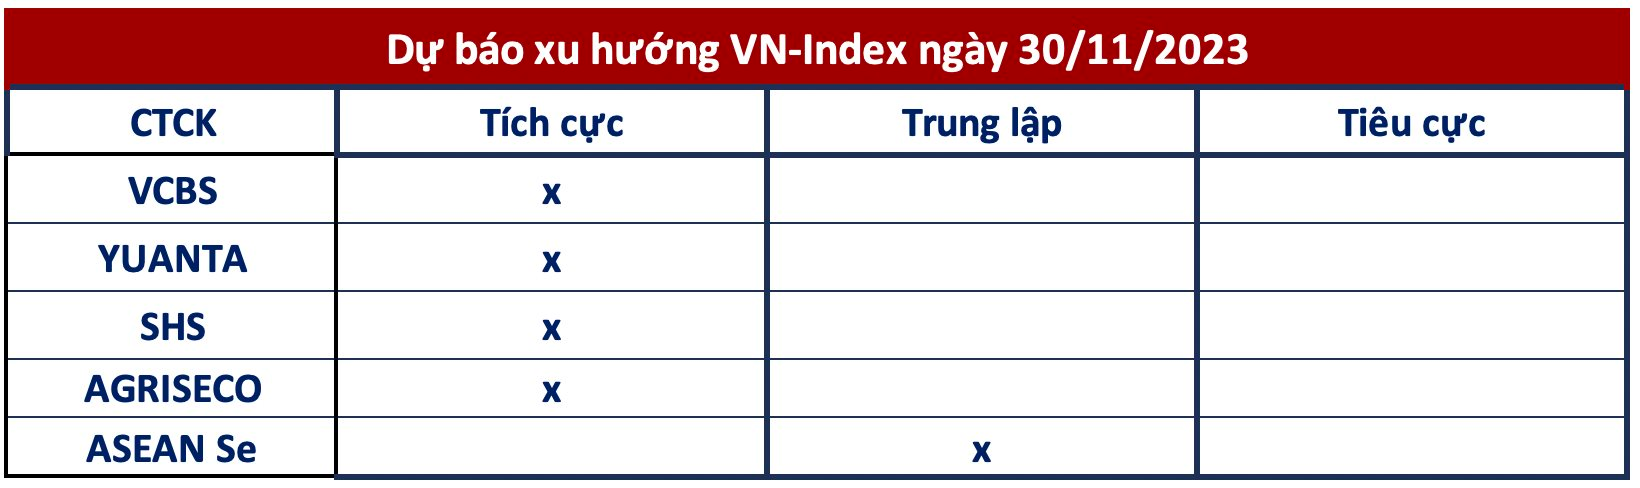 Góc nhìn CTCK: VN-Index hướng lên 1.115 điểm, tập trung nhóm cổ phiếu đang thu hút dòng tiền - Ảnh 1.